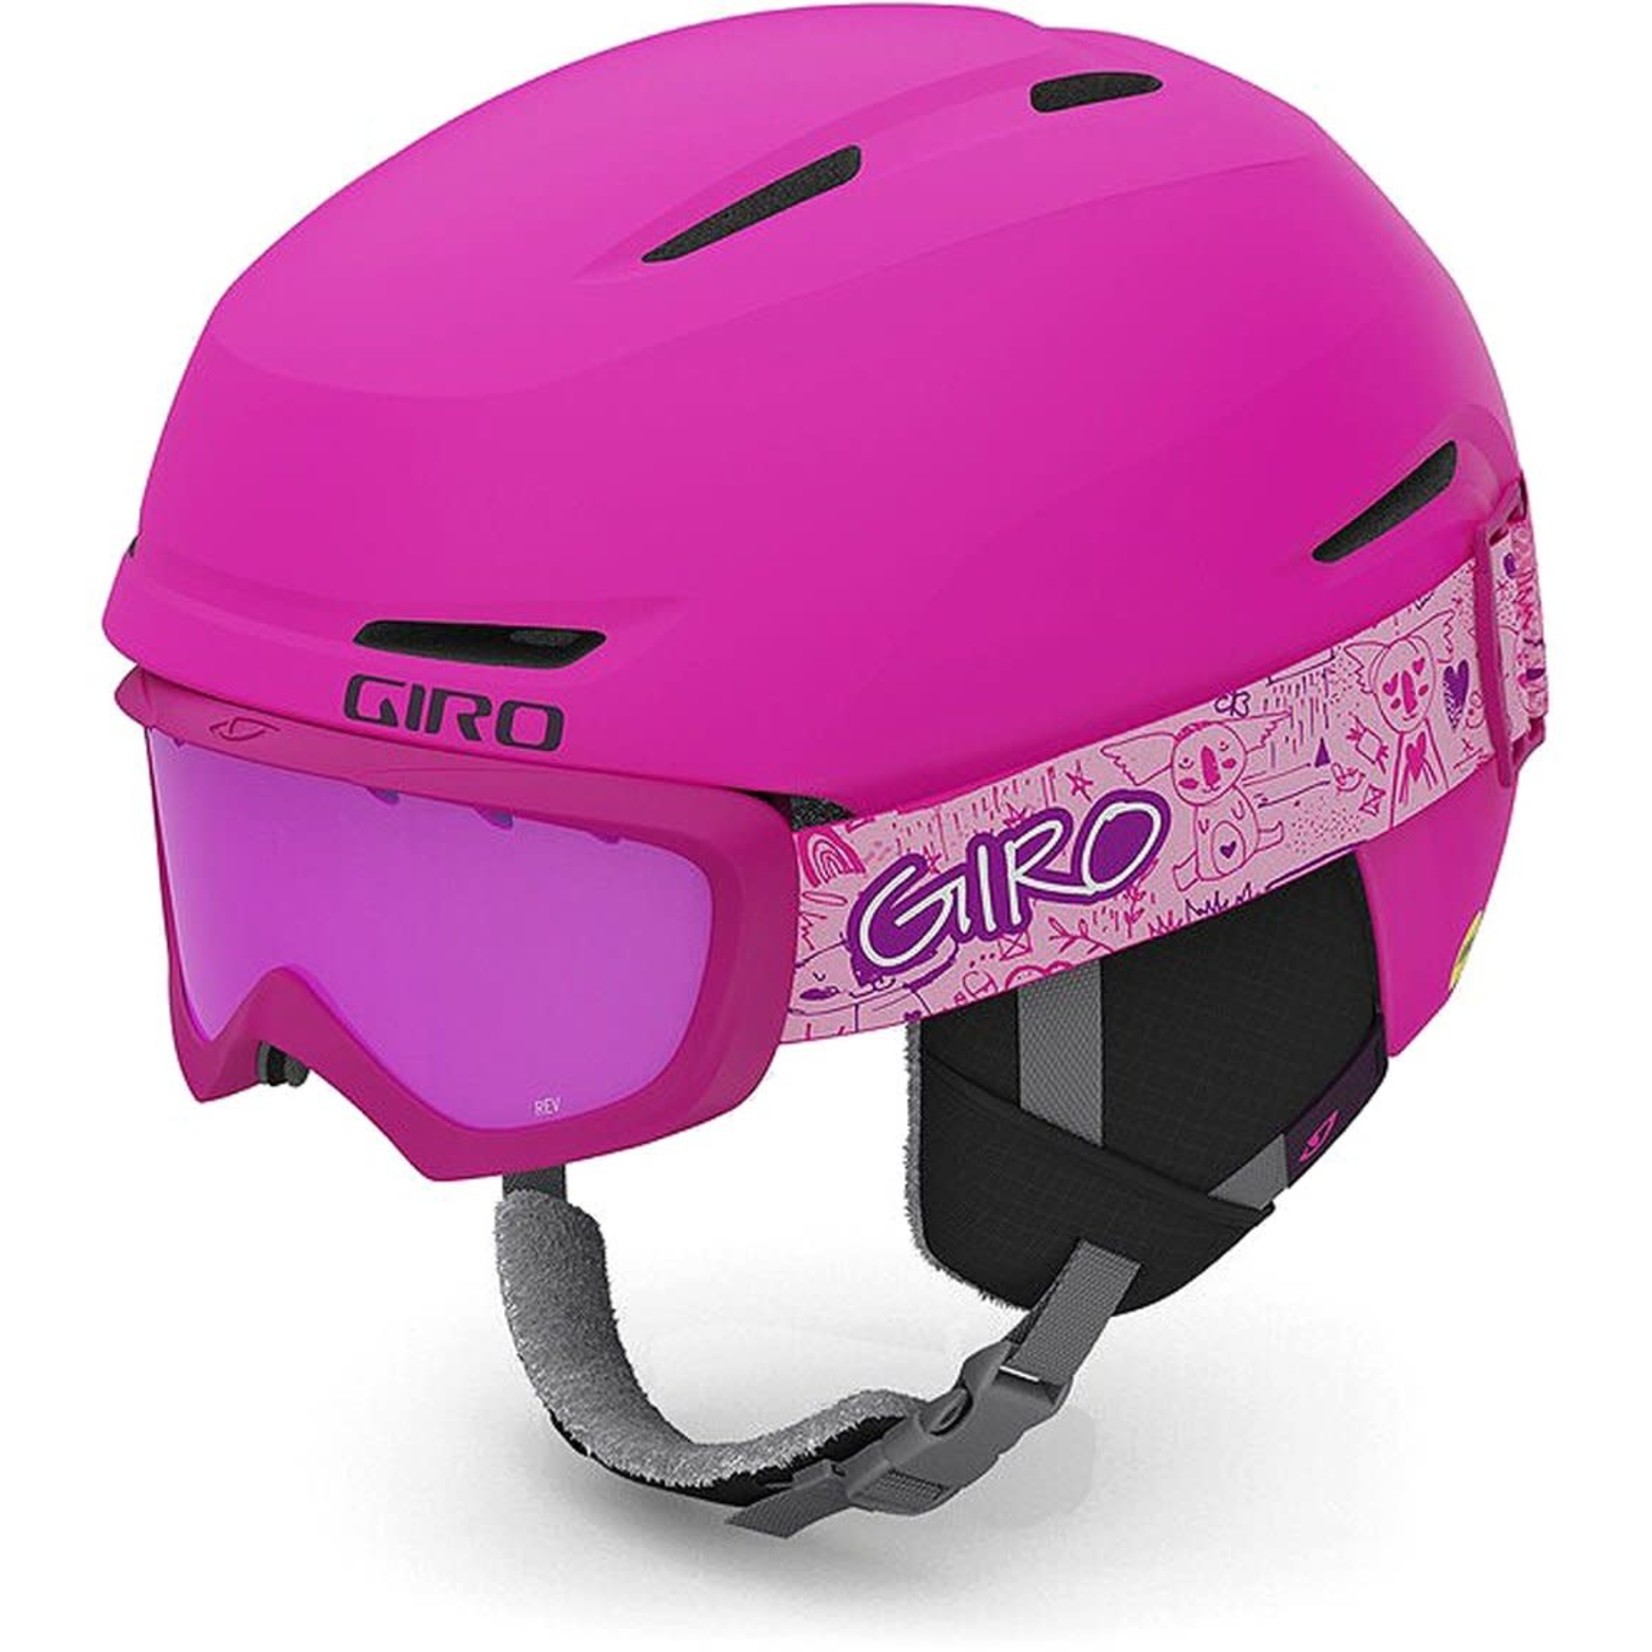 GIRO GIRO Spur Cp casque de ski enfant